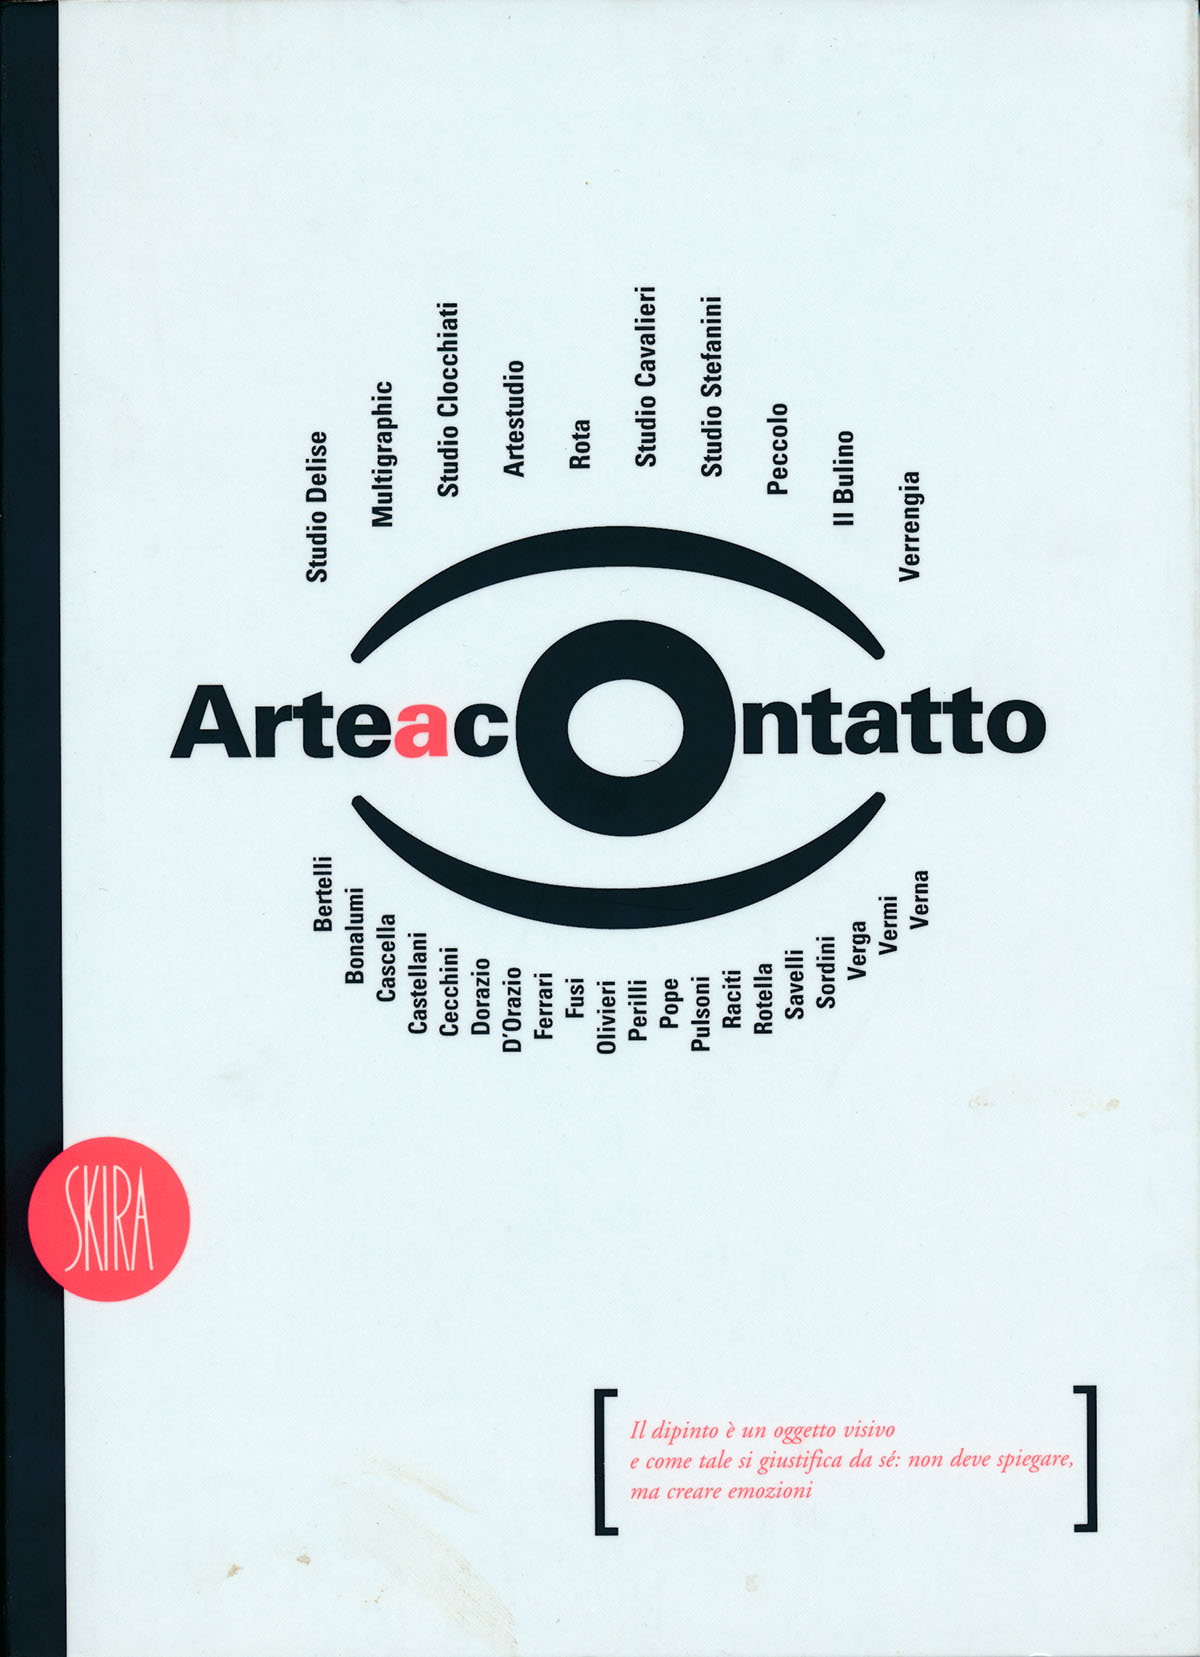 1997 Arte a contatto Edizioni Skira